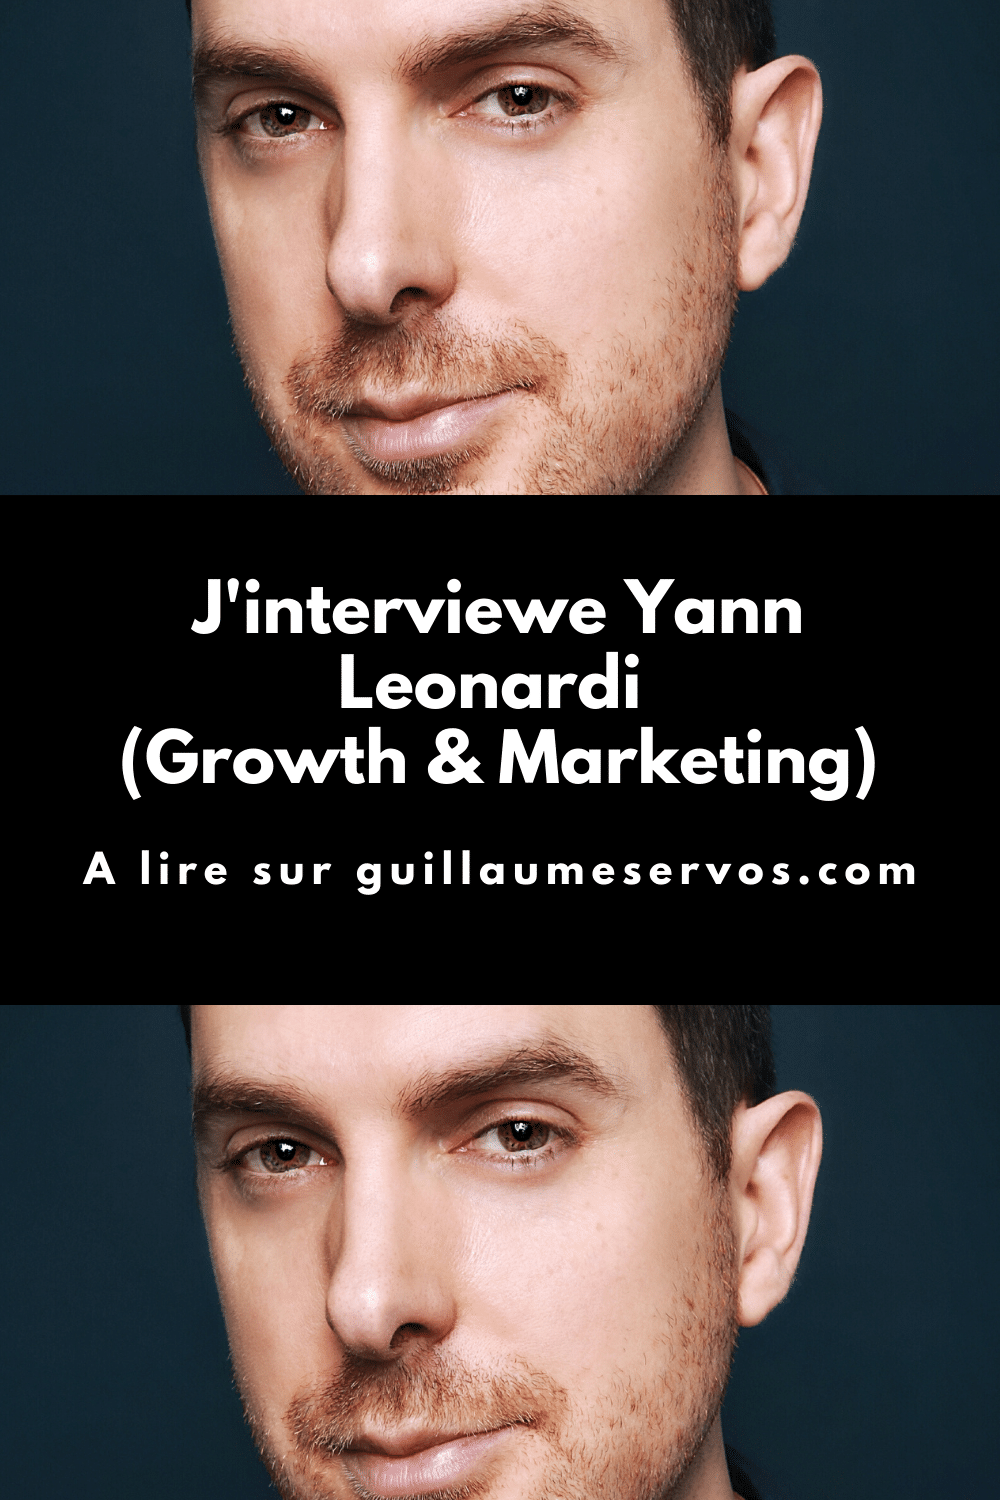 Découvre mon interview avec Yann Leonardi, spécialiste Growth et Marketing. Au menu : son rapport à l’entrepreneuriat, au podcasting, aux réseaux sociaux et au voyage.